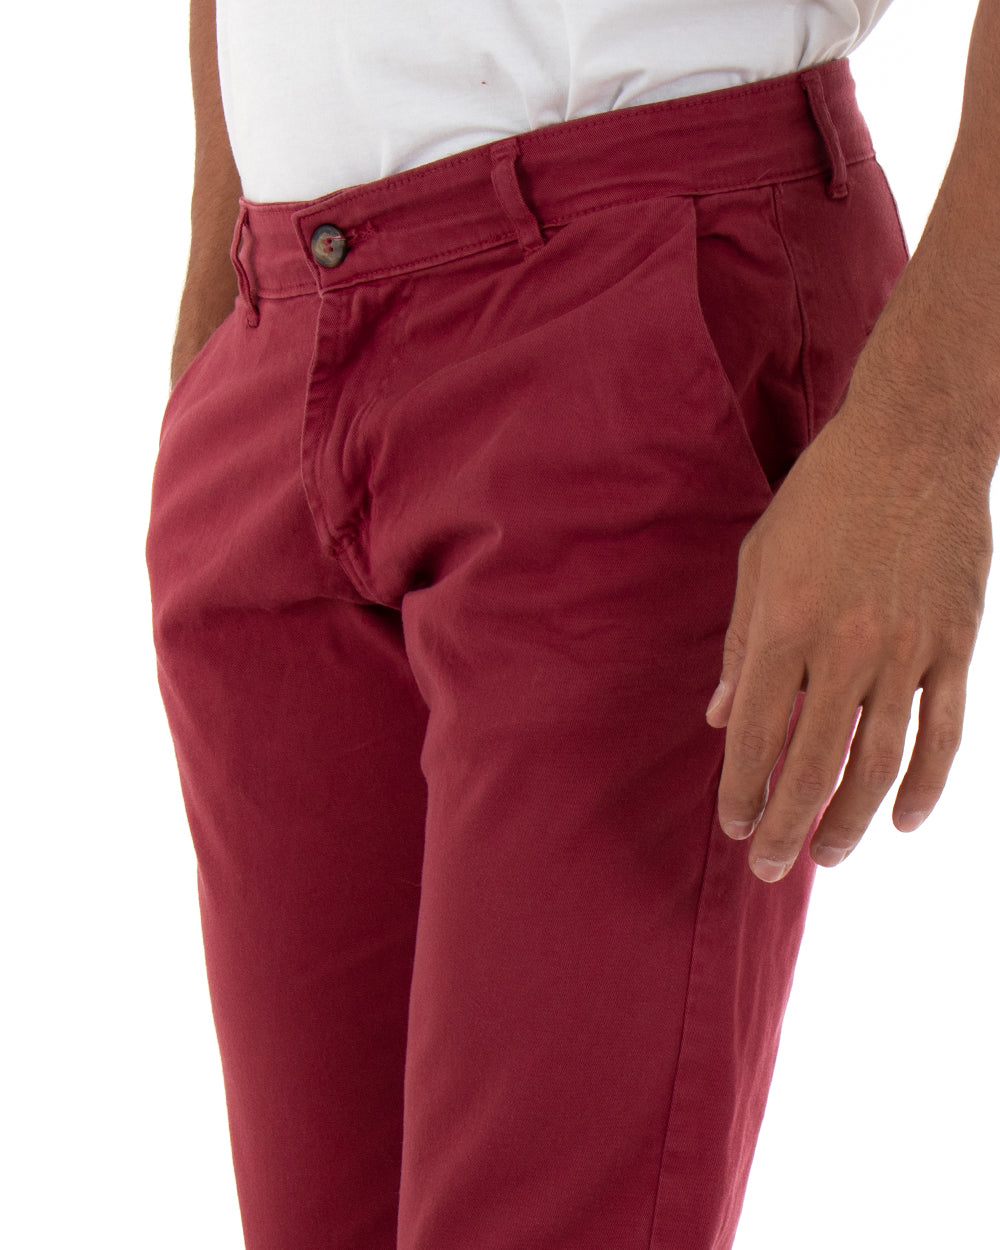 Pantaloni Uomo Tasca America Basic Cotone Elastico Bordeaux Slim Classico GIOSAL-P5006A